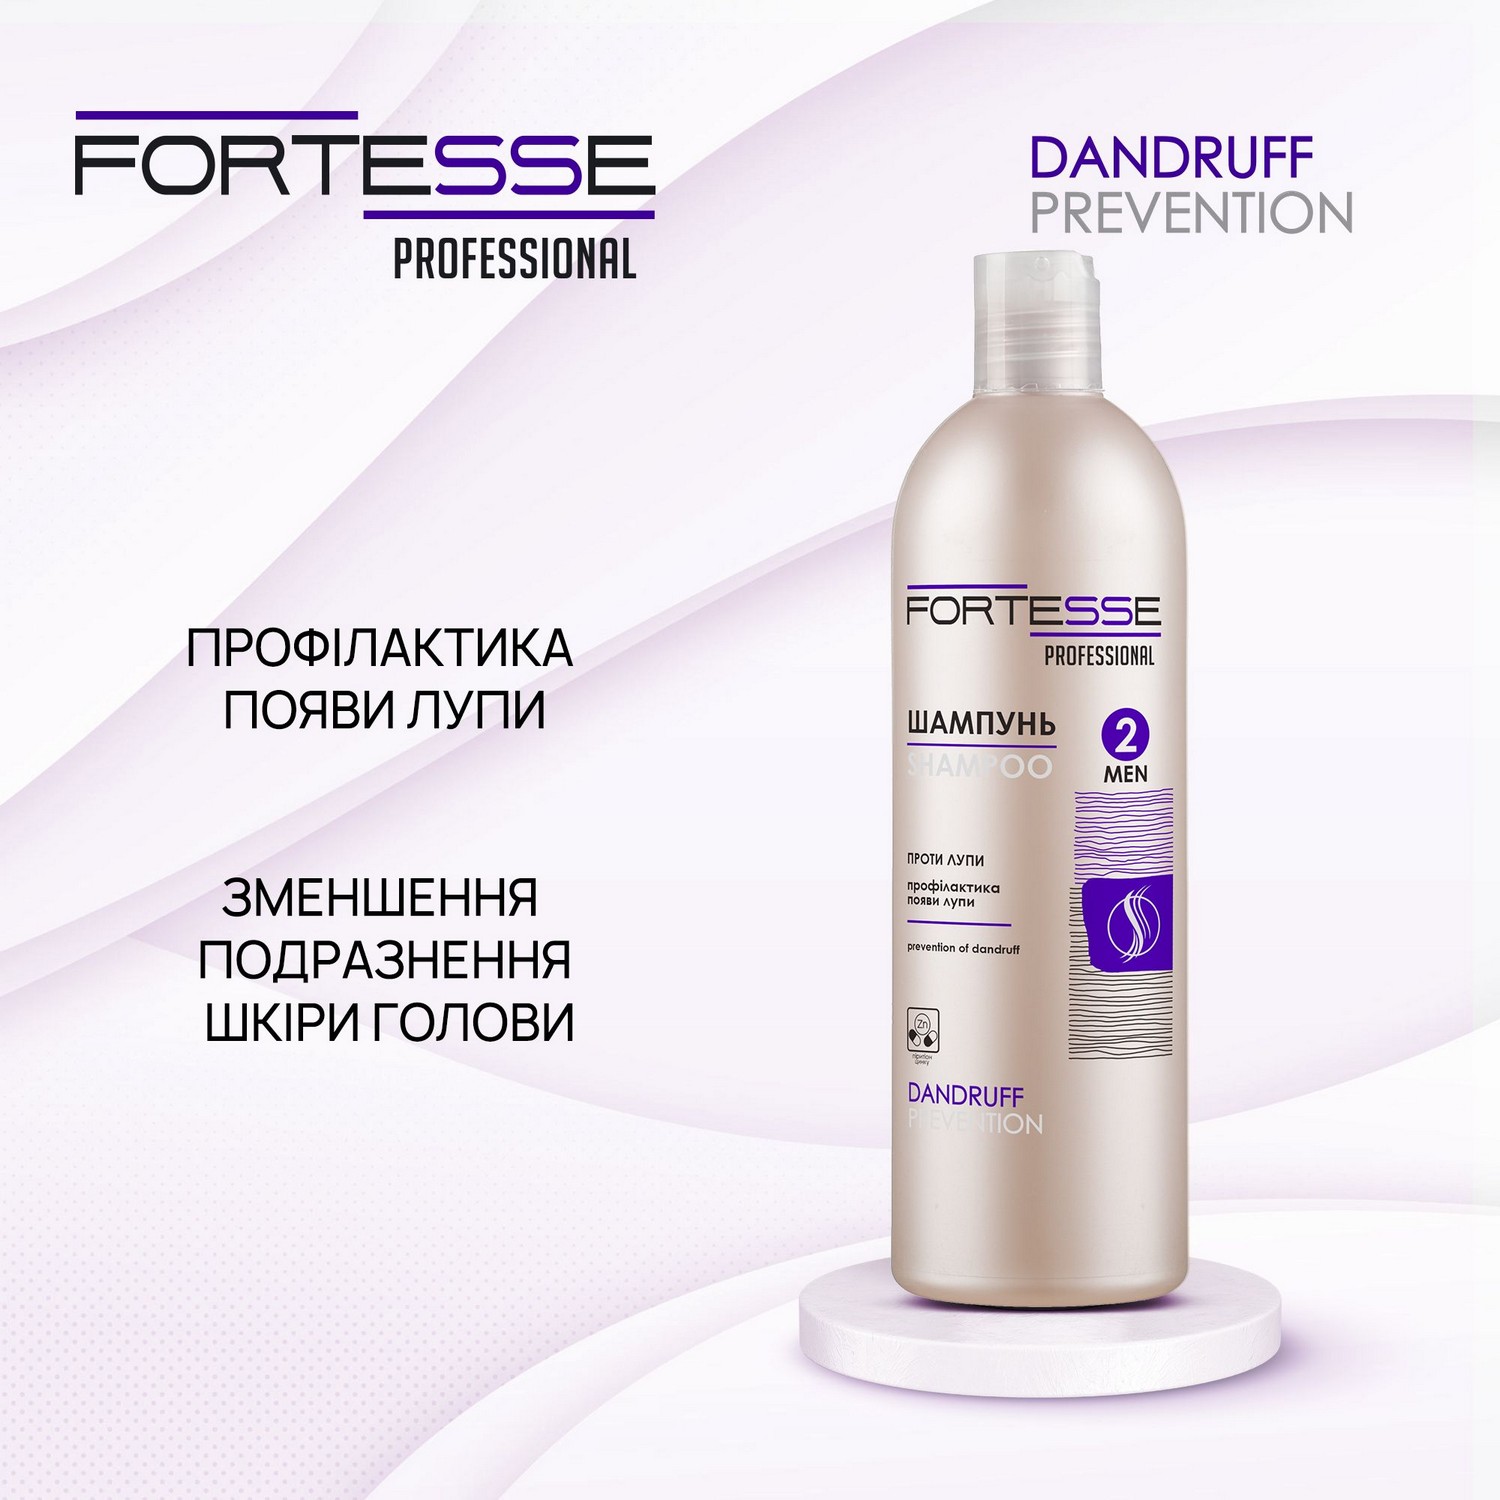 Нормализующий шампунь-ополаскиватель Fortesse Professional Dandruff Prevention, профилактика появления перхоти, 400 мл - фото 4